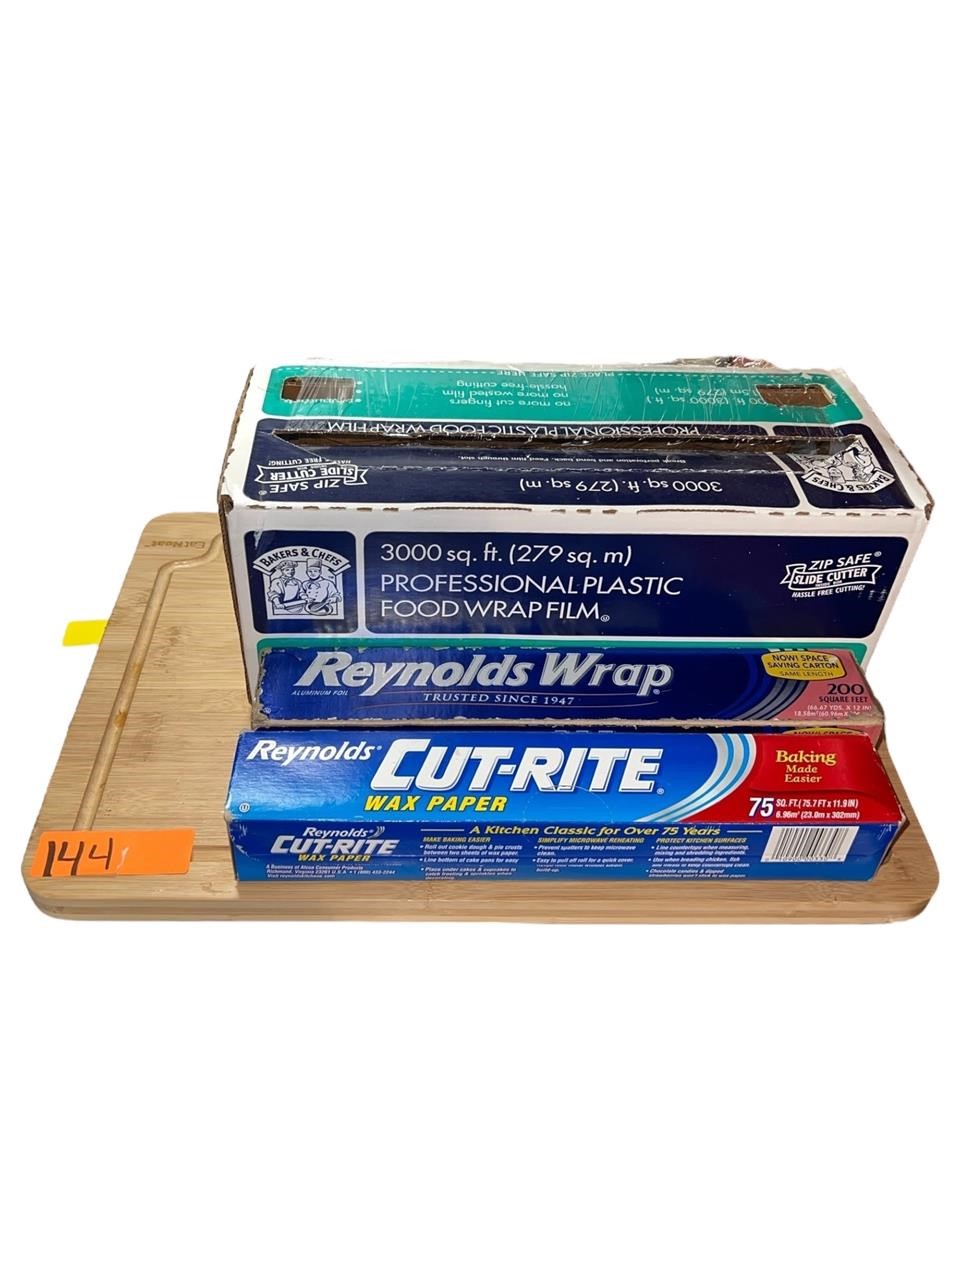 Cutting Board - Plastic wrap - Reynolds wrap